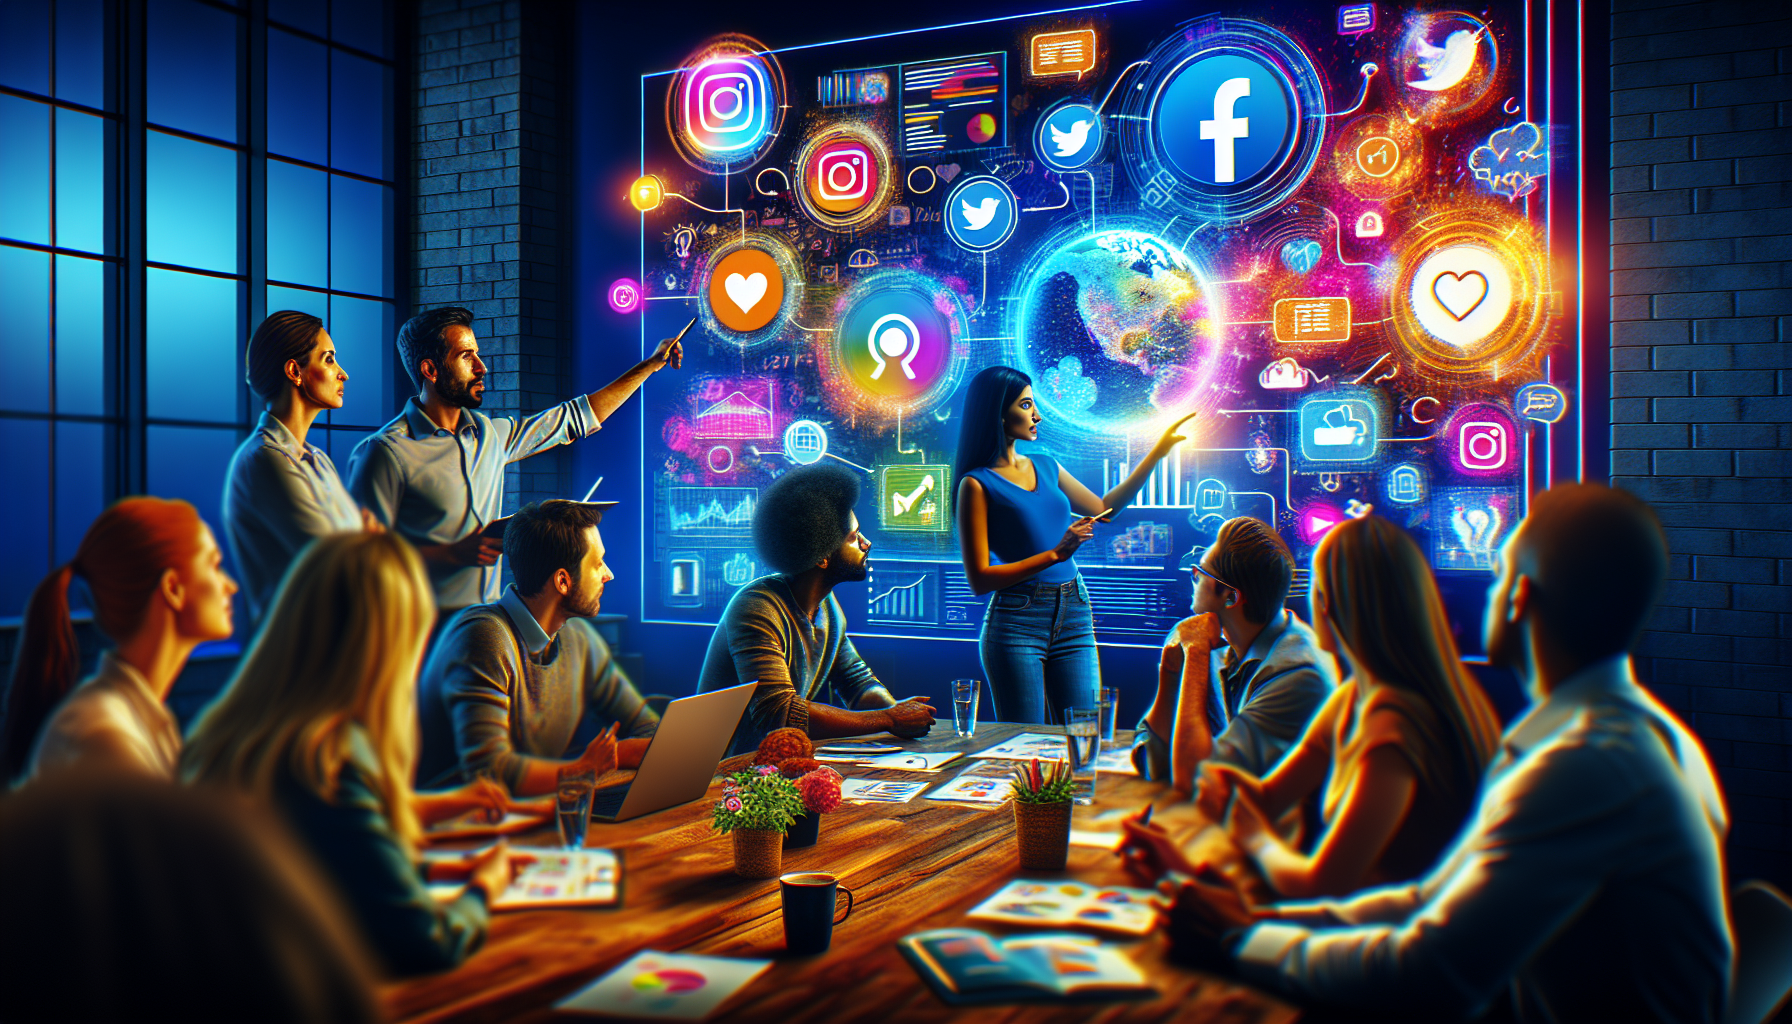 découvrez les stratégies avancées de marketing digital sur les réseaux sociaux avec notre formation en marketing digital. apprenez à développer une présence efficace sur les réseaux sociaux et à créer des campagnes marketing percutantes.